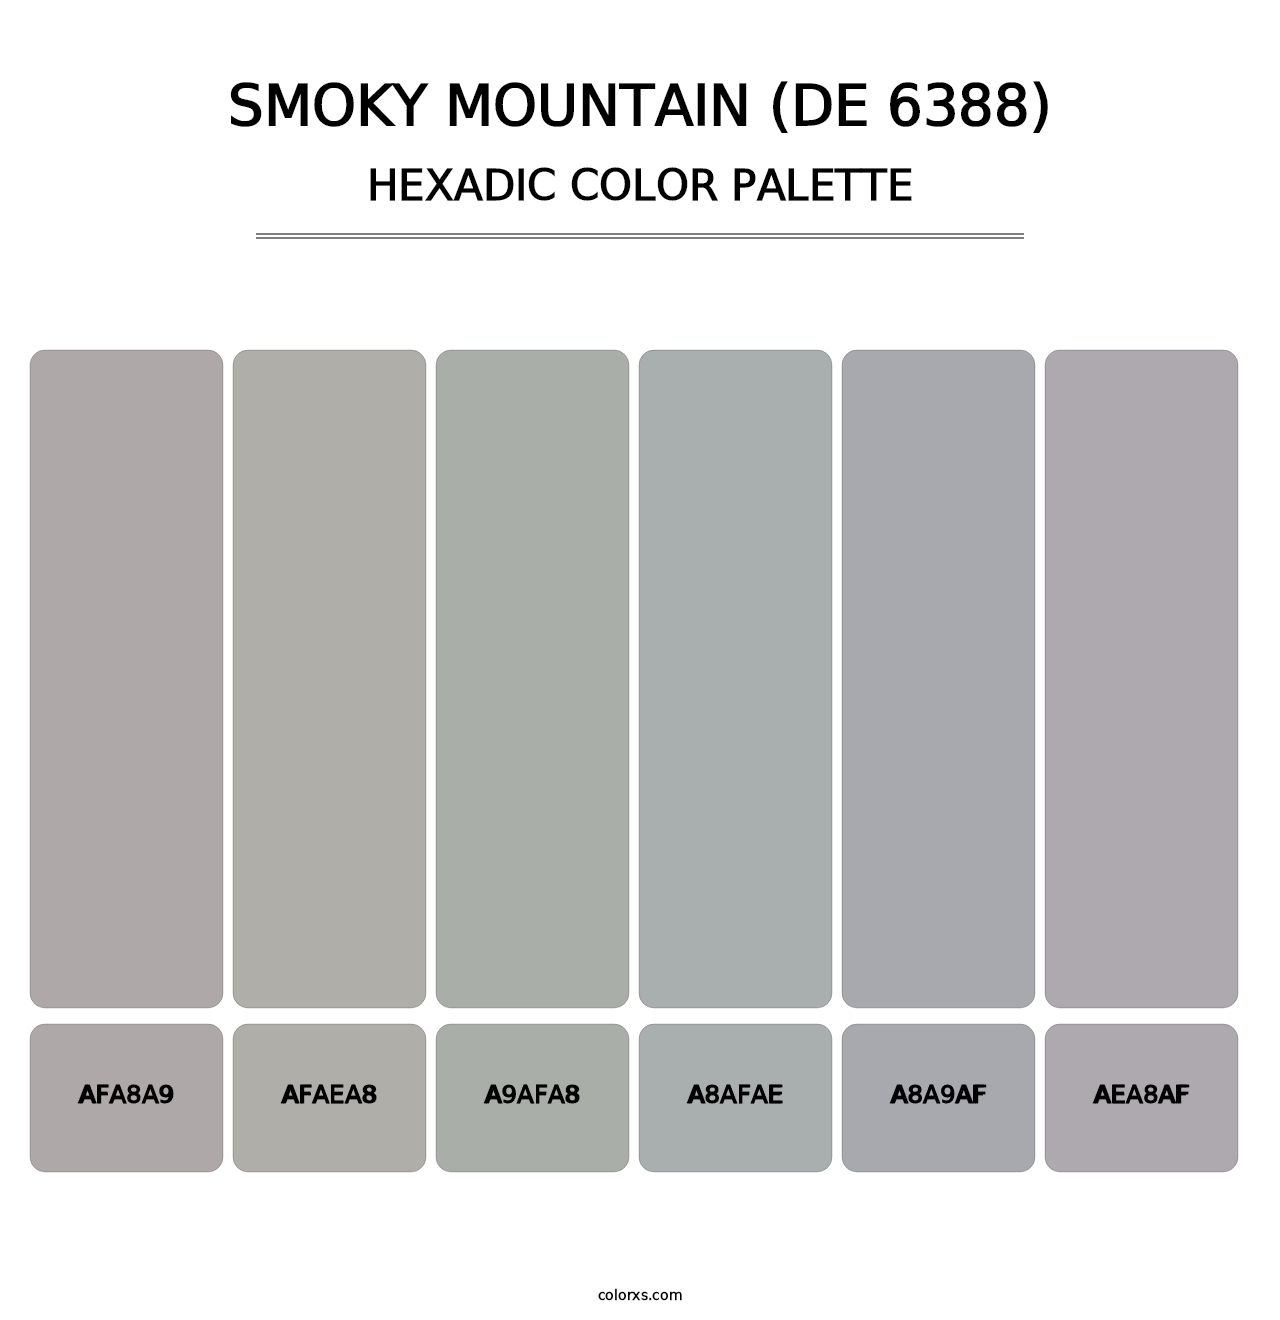 Smoky Mountain (DE 6388) - Hexadic Color Palette